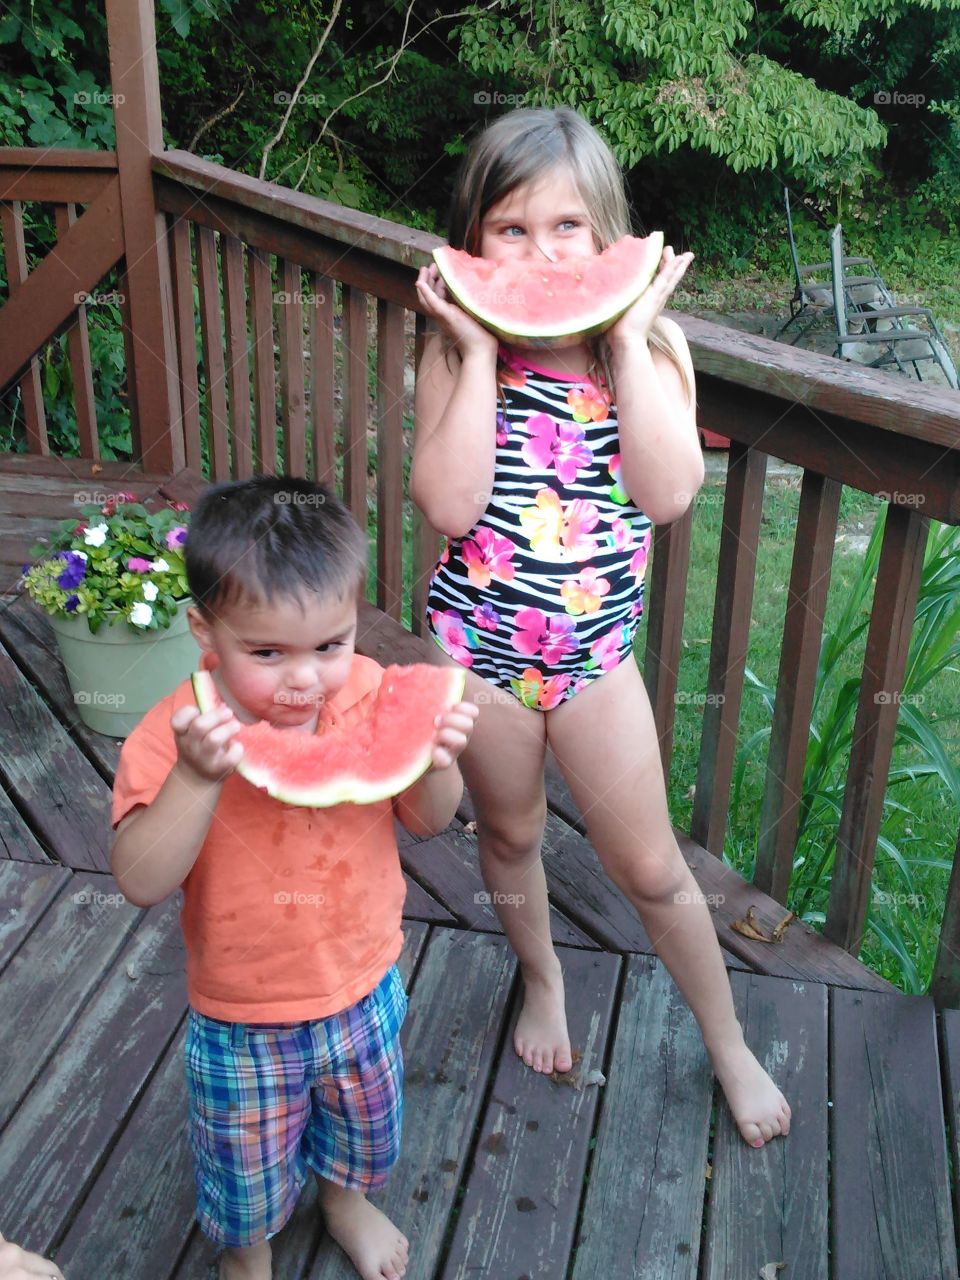 watermelon days